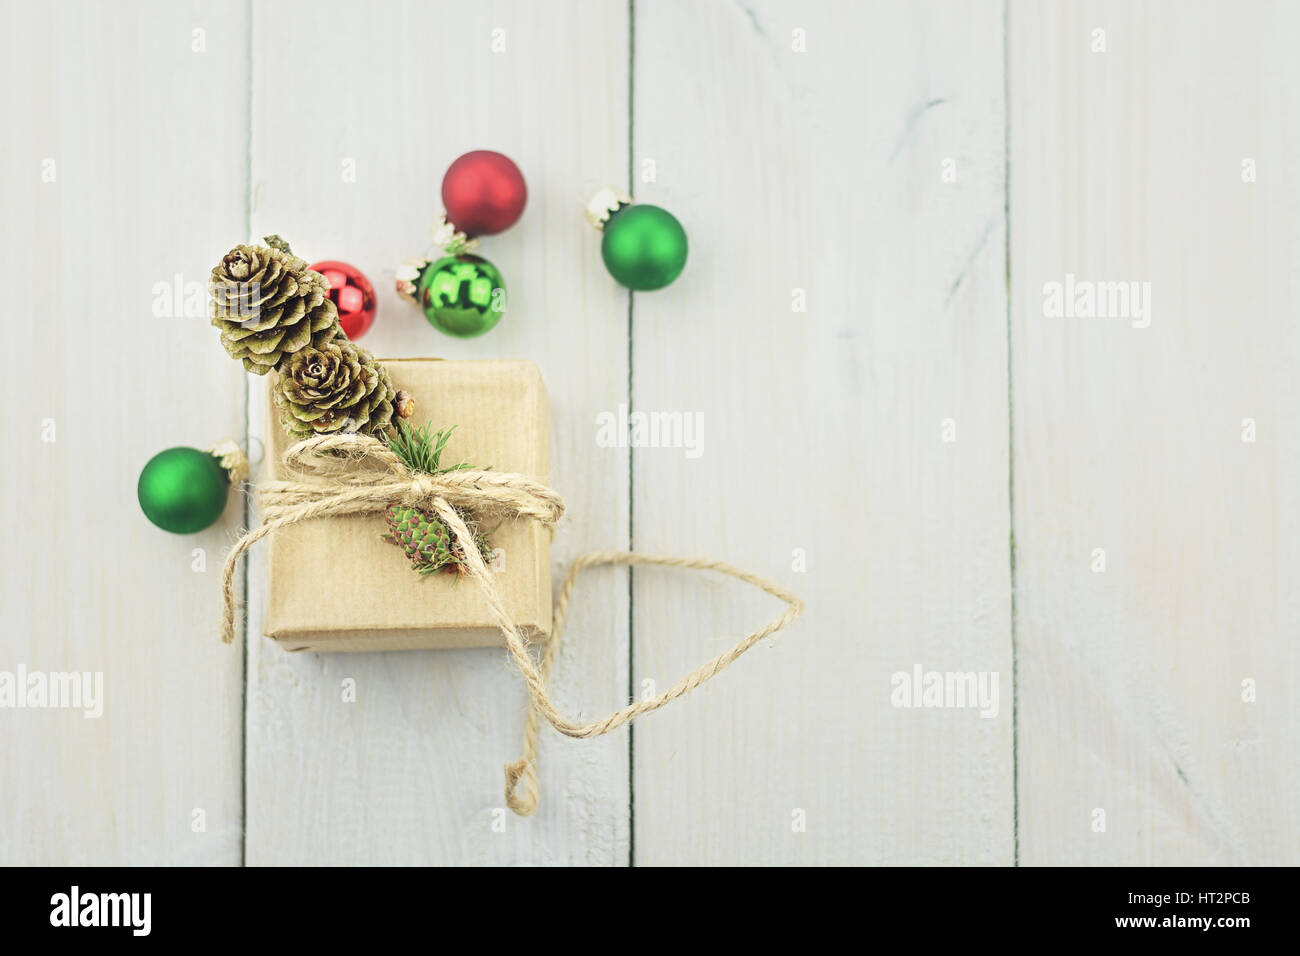 Cuadro pequeño sobre un fondo de madera atados con una cuerda, decorada con una ramita de árboles de Navidad, bolas de Navidad. Foto de stock